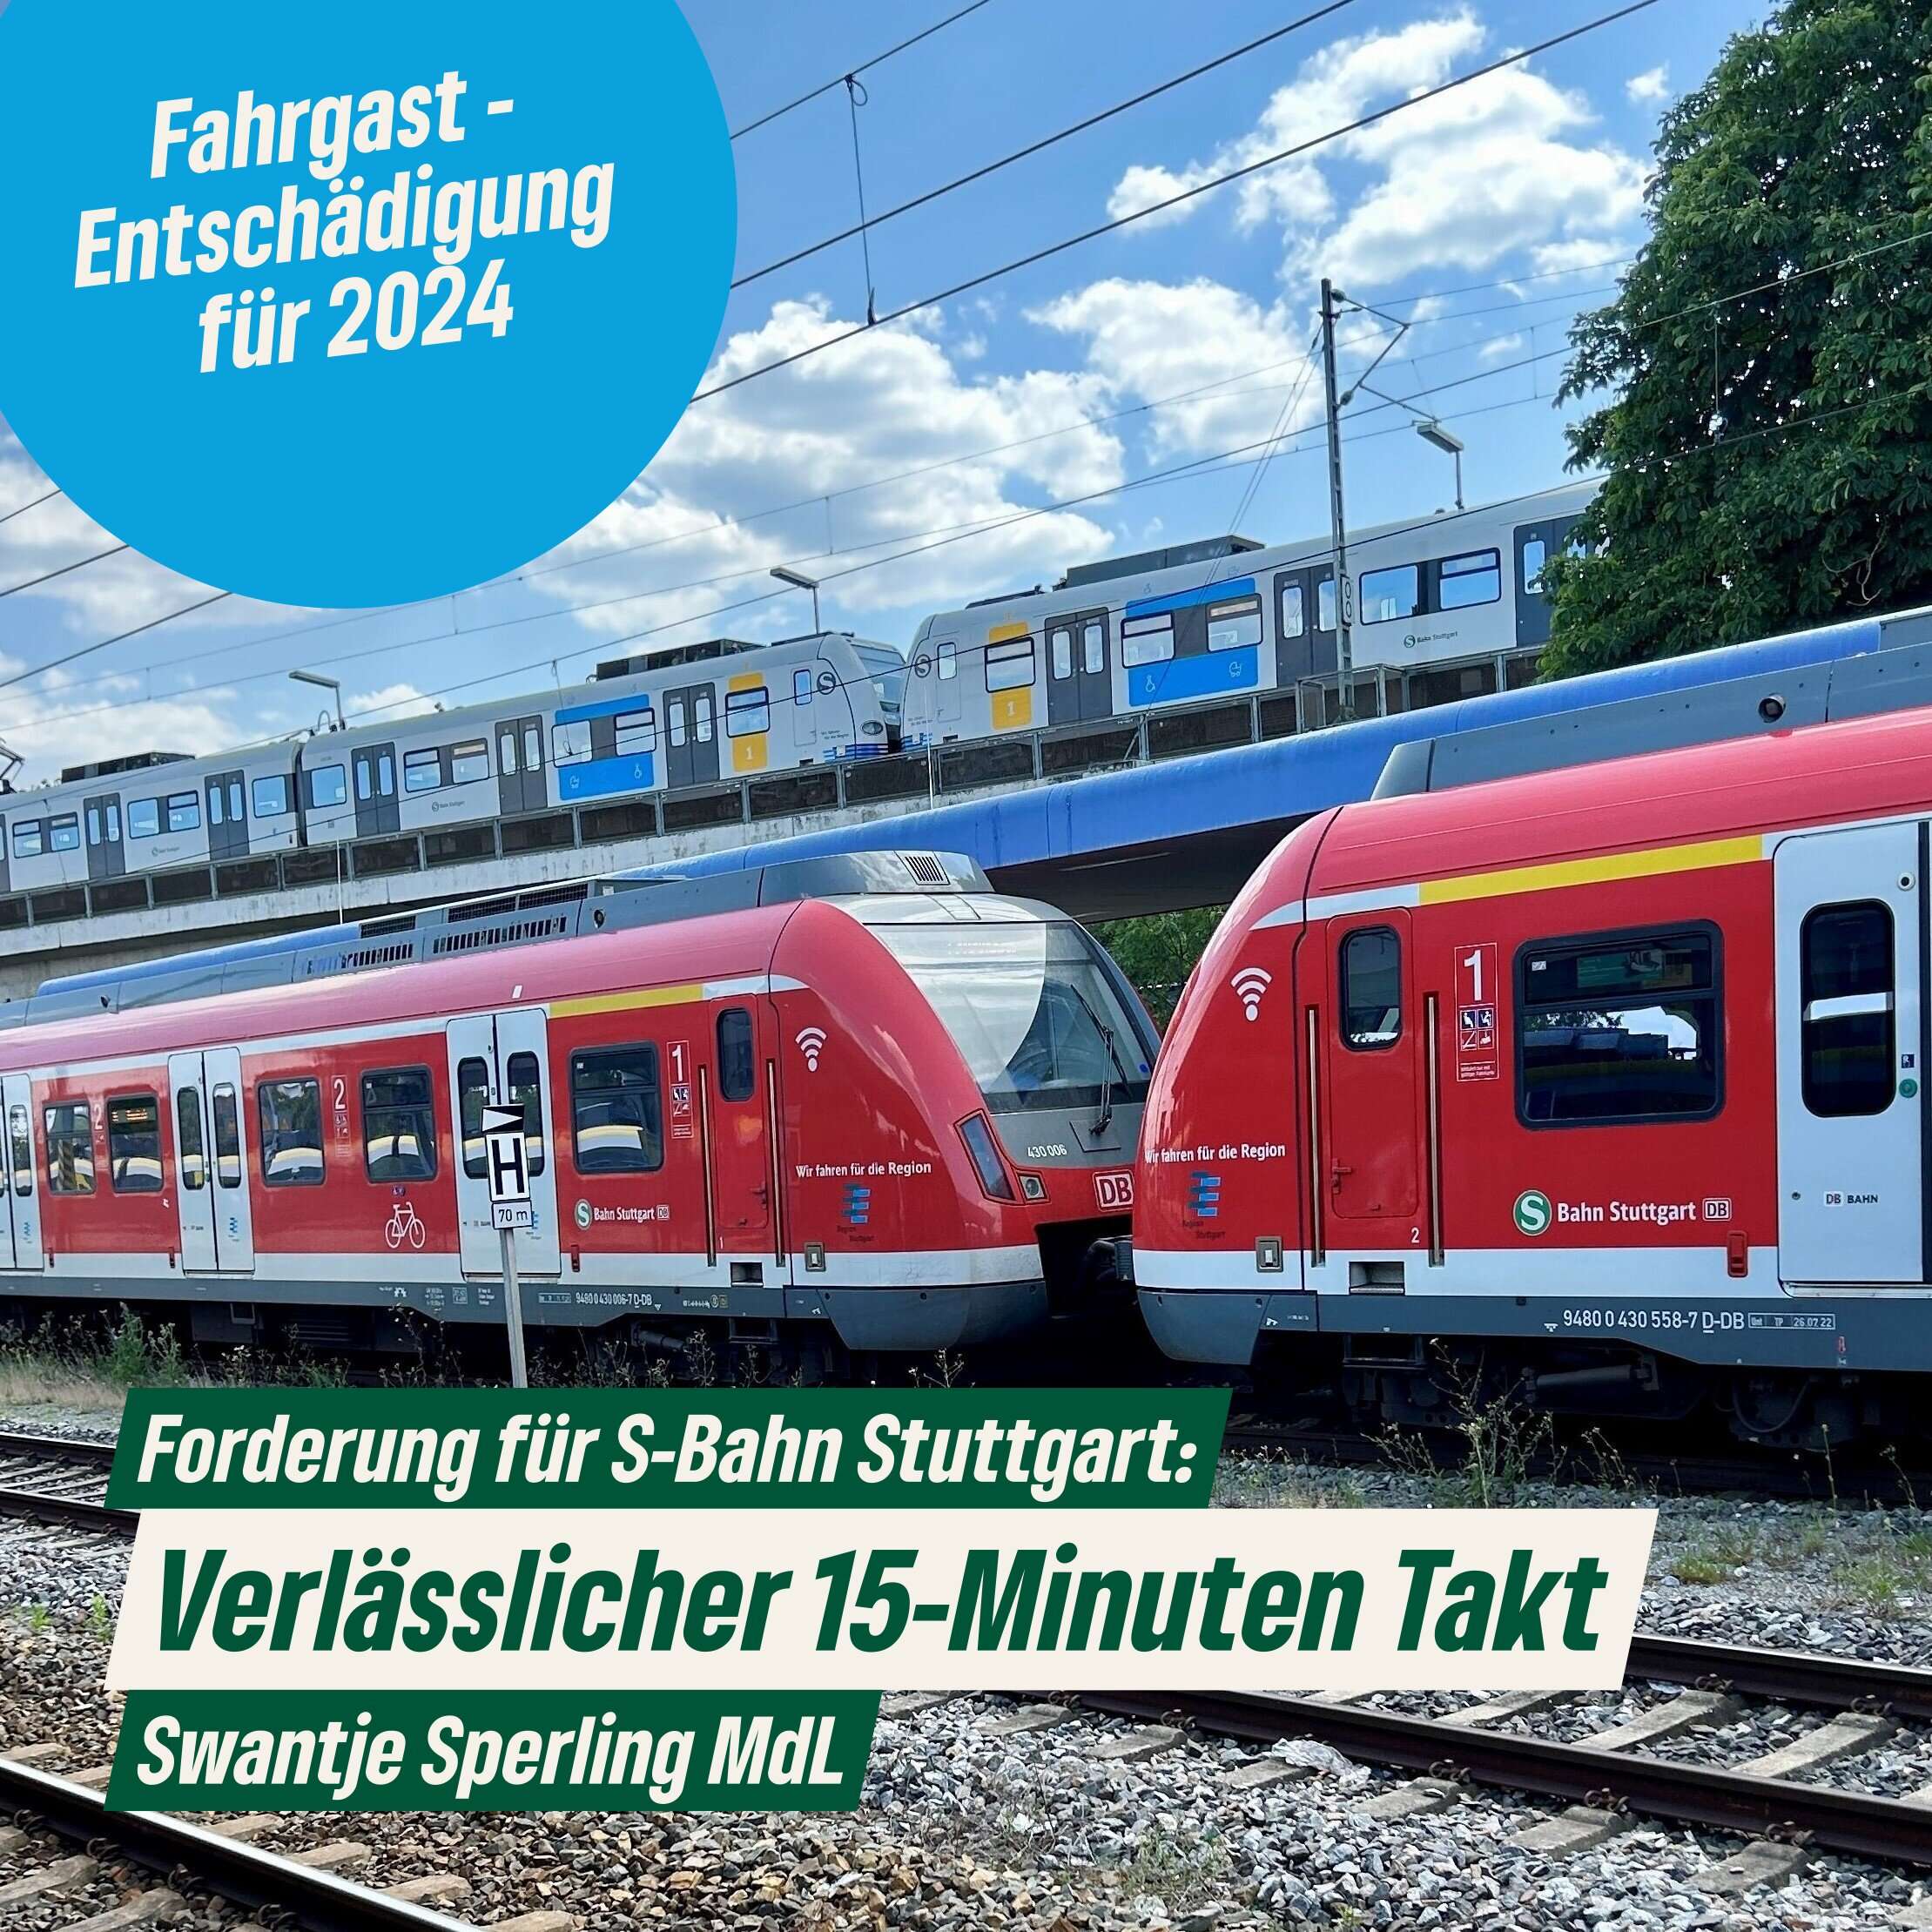 Fahrgast-Entschädigung und verlässlicher Takt bei der S-Bahn Stuttgart